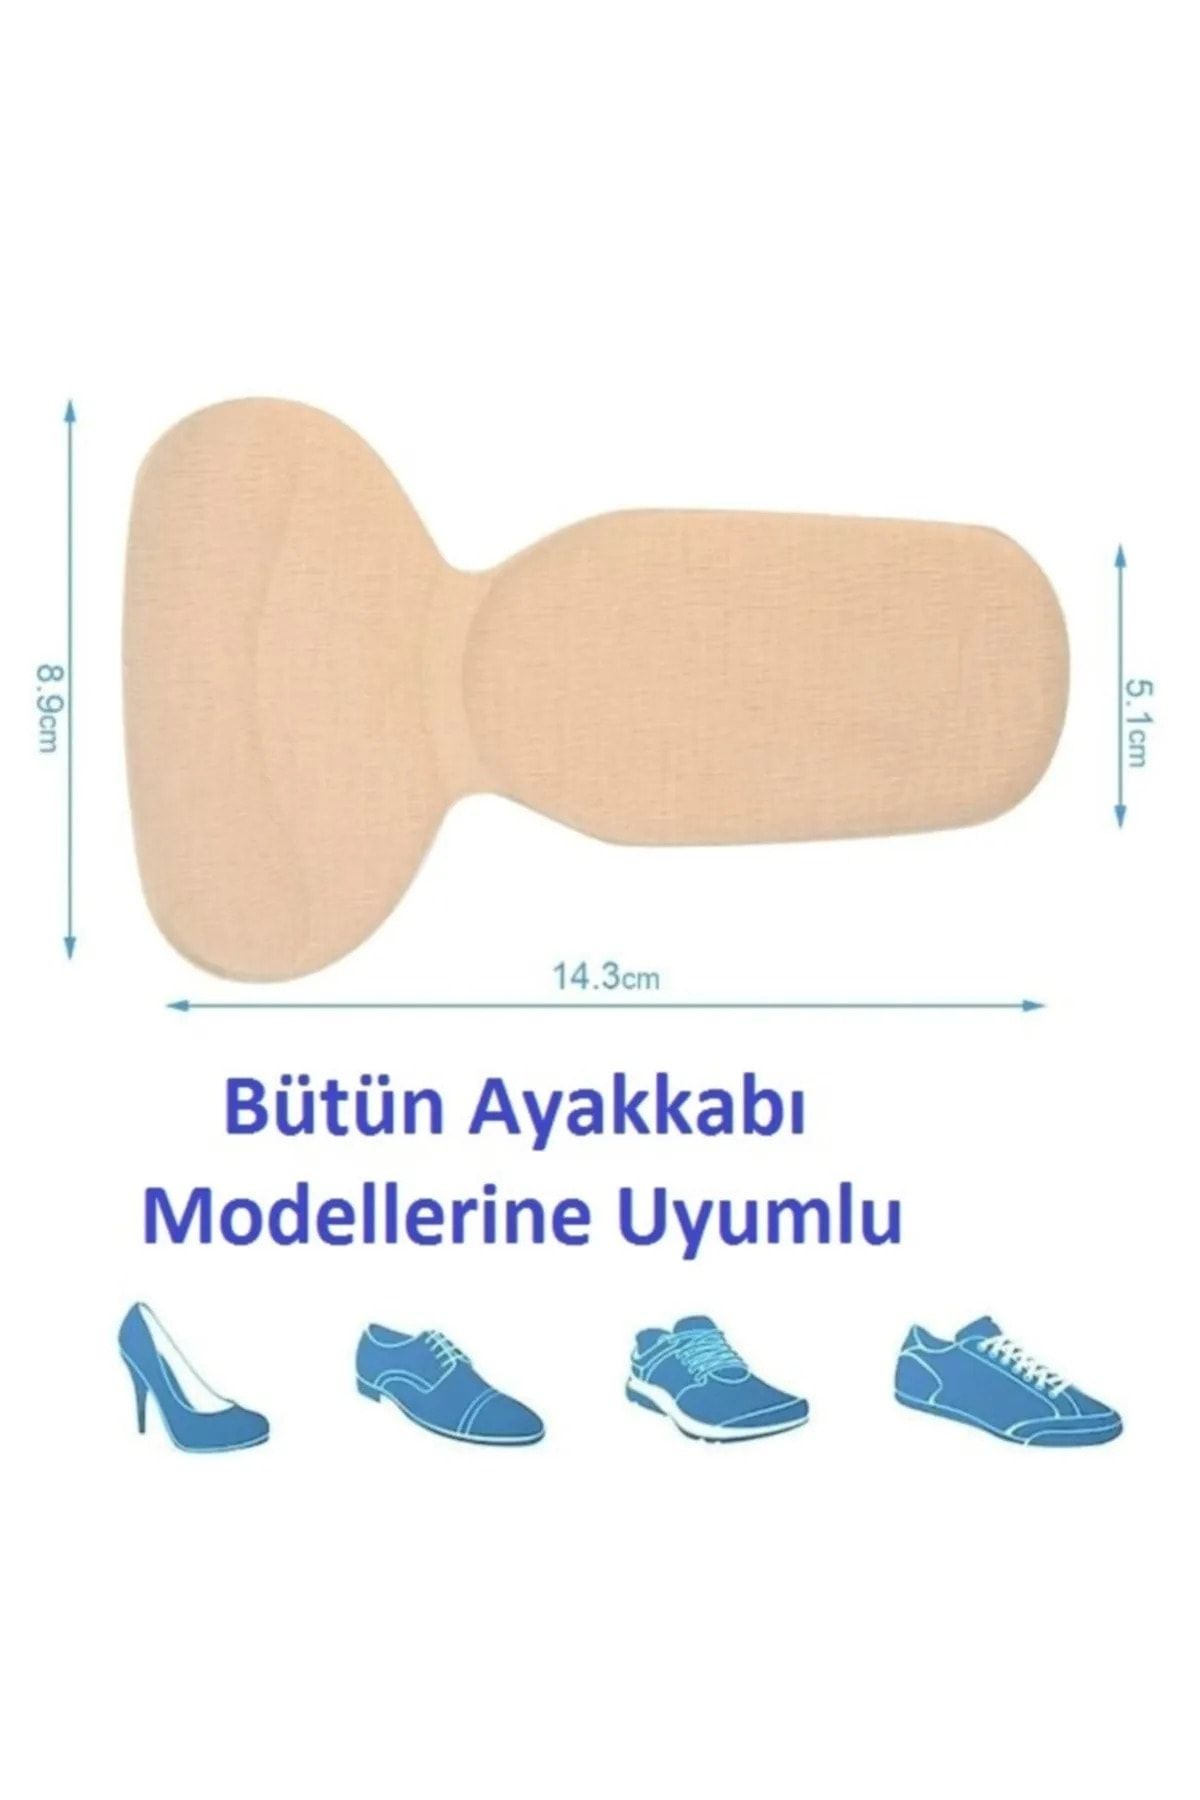 Seram Collection 1 Çift Ten Ortopedik Tabanlık Yüksek Topuklu Ayakkabı Topuk Vurma Önleyici Koruyucu Yastığı Ped